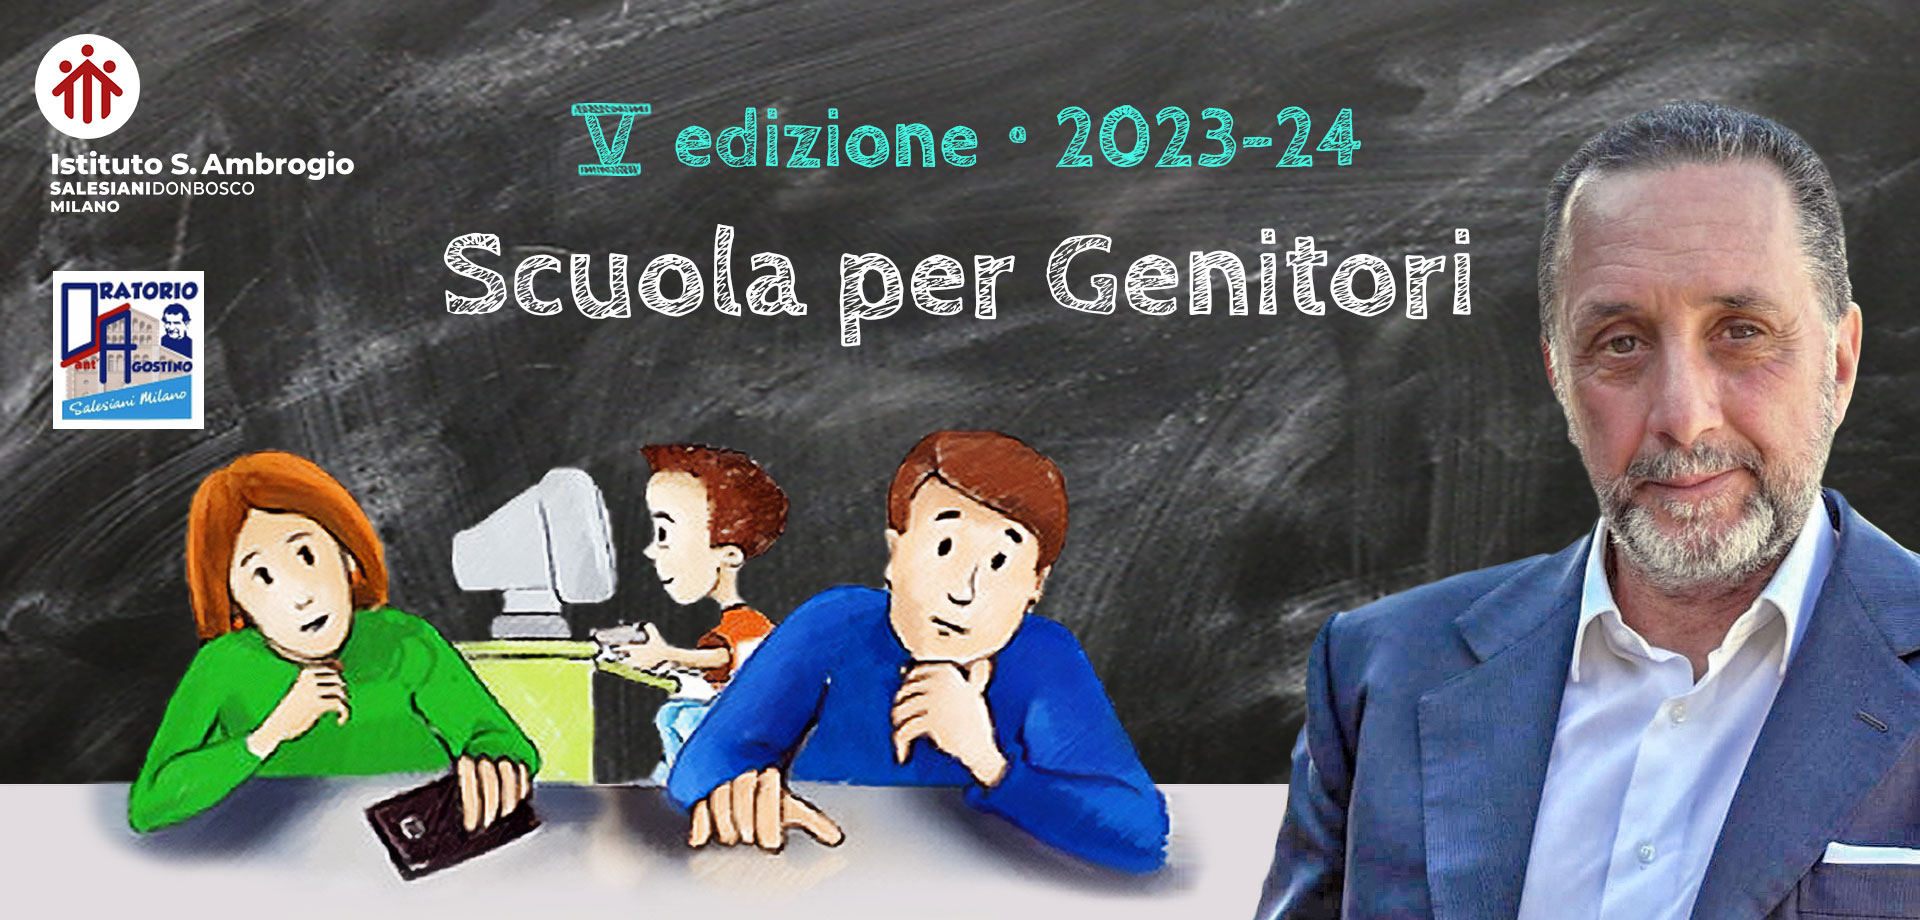 Scuola per Genitori - Antonio Polito - Salesiani Milano